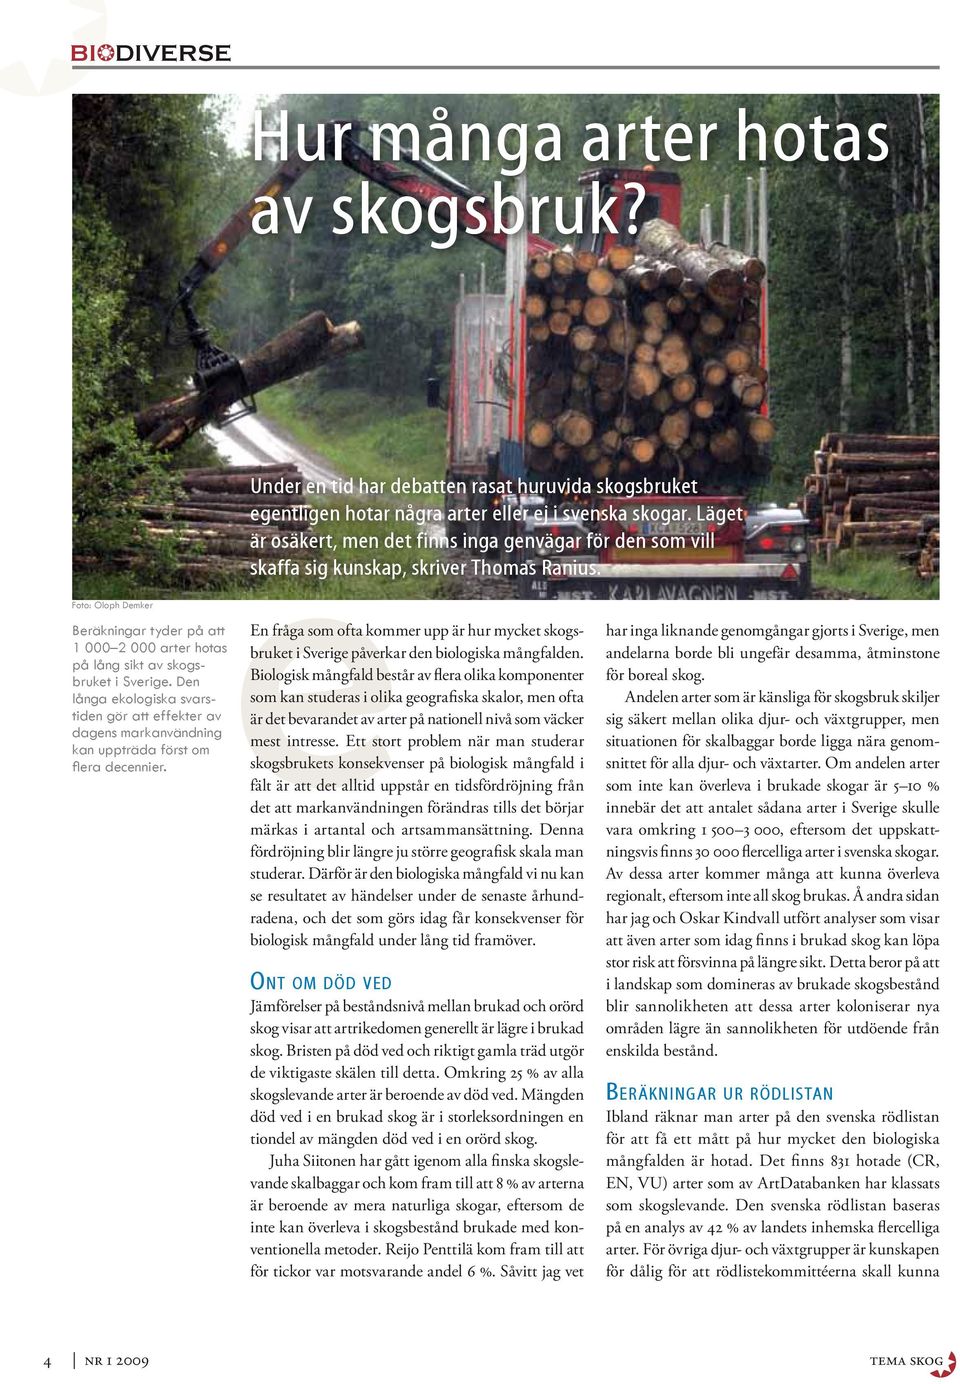 Foto: Oloph Demker Beräkningar tyder på att een fråga som ofta kommer upp är hur mycket skogsbruket i Sverige påverkar den biologiska mångfalden.